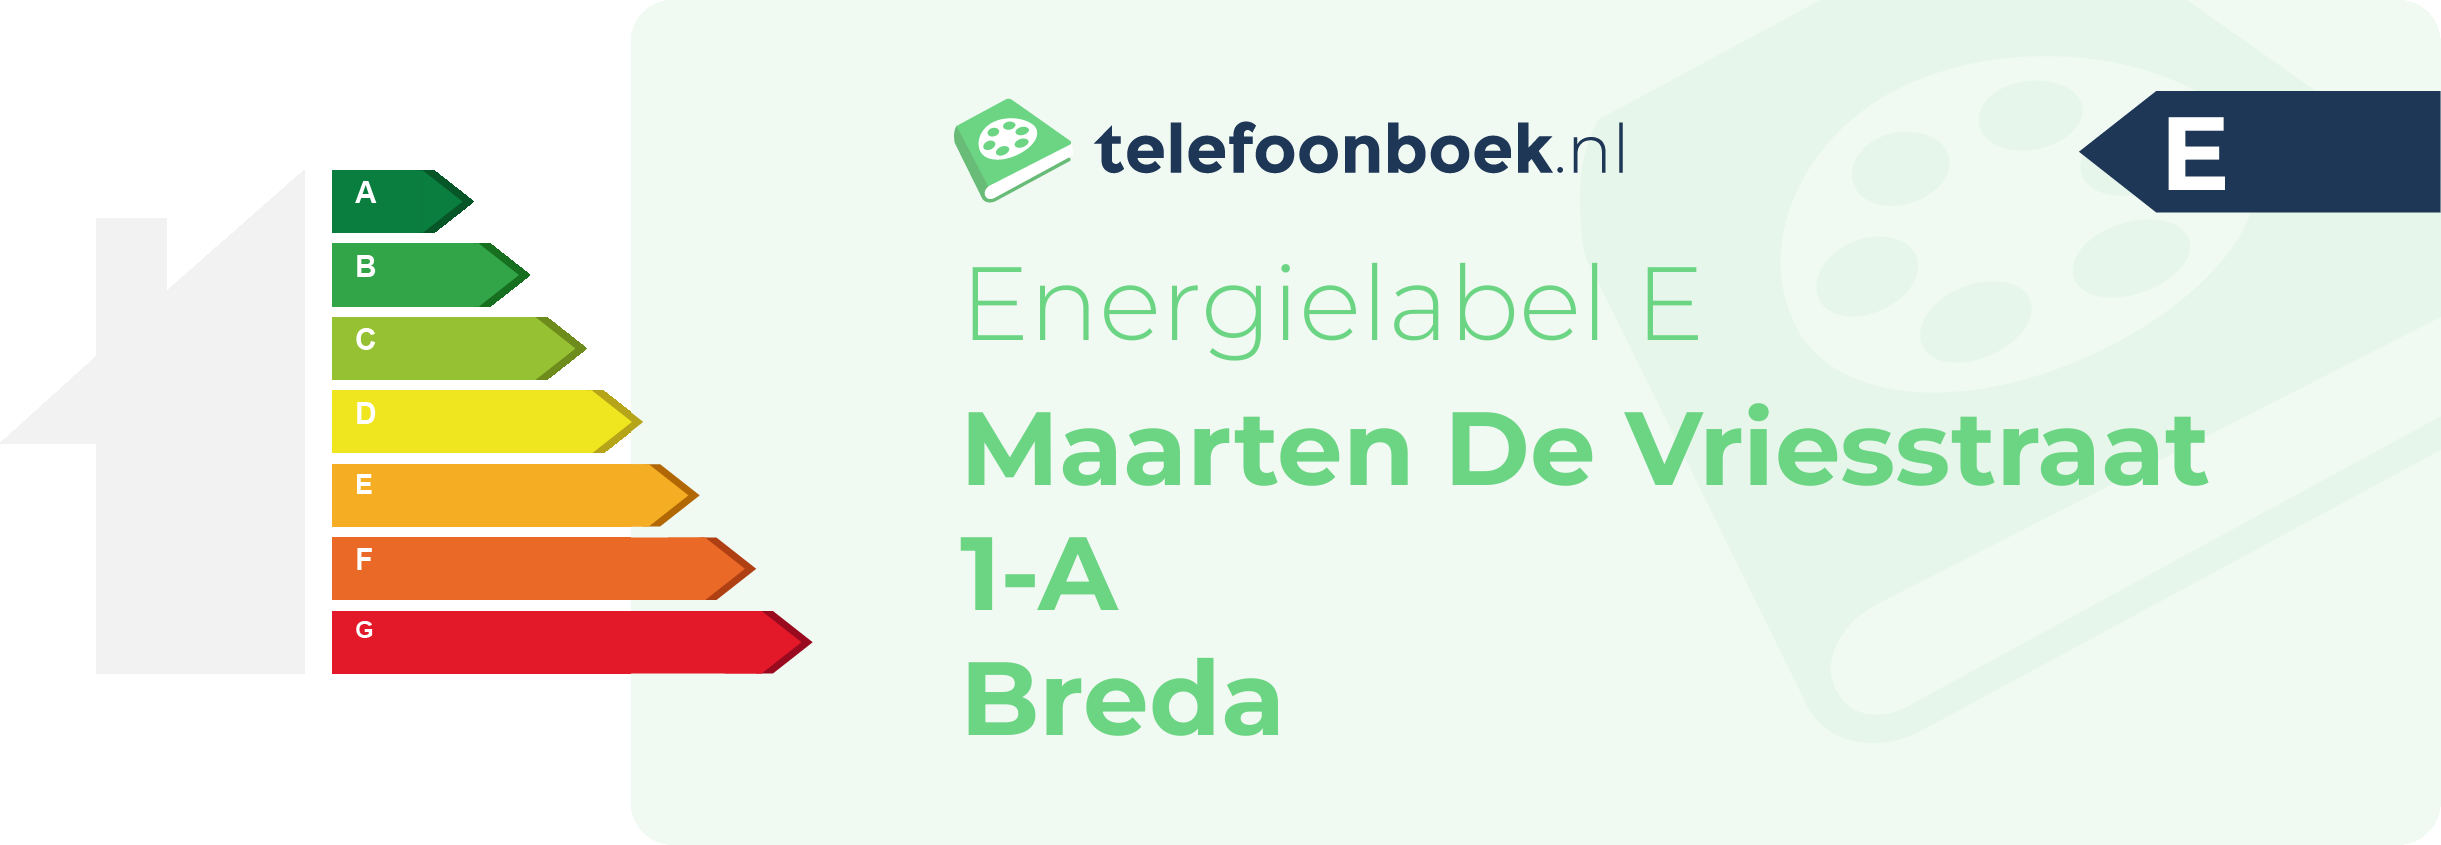 Energielabel Maarten De Vriesstraat 1-A Breda